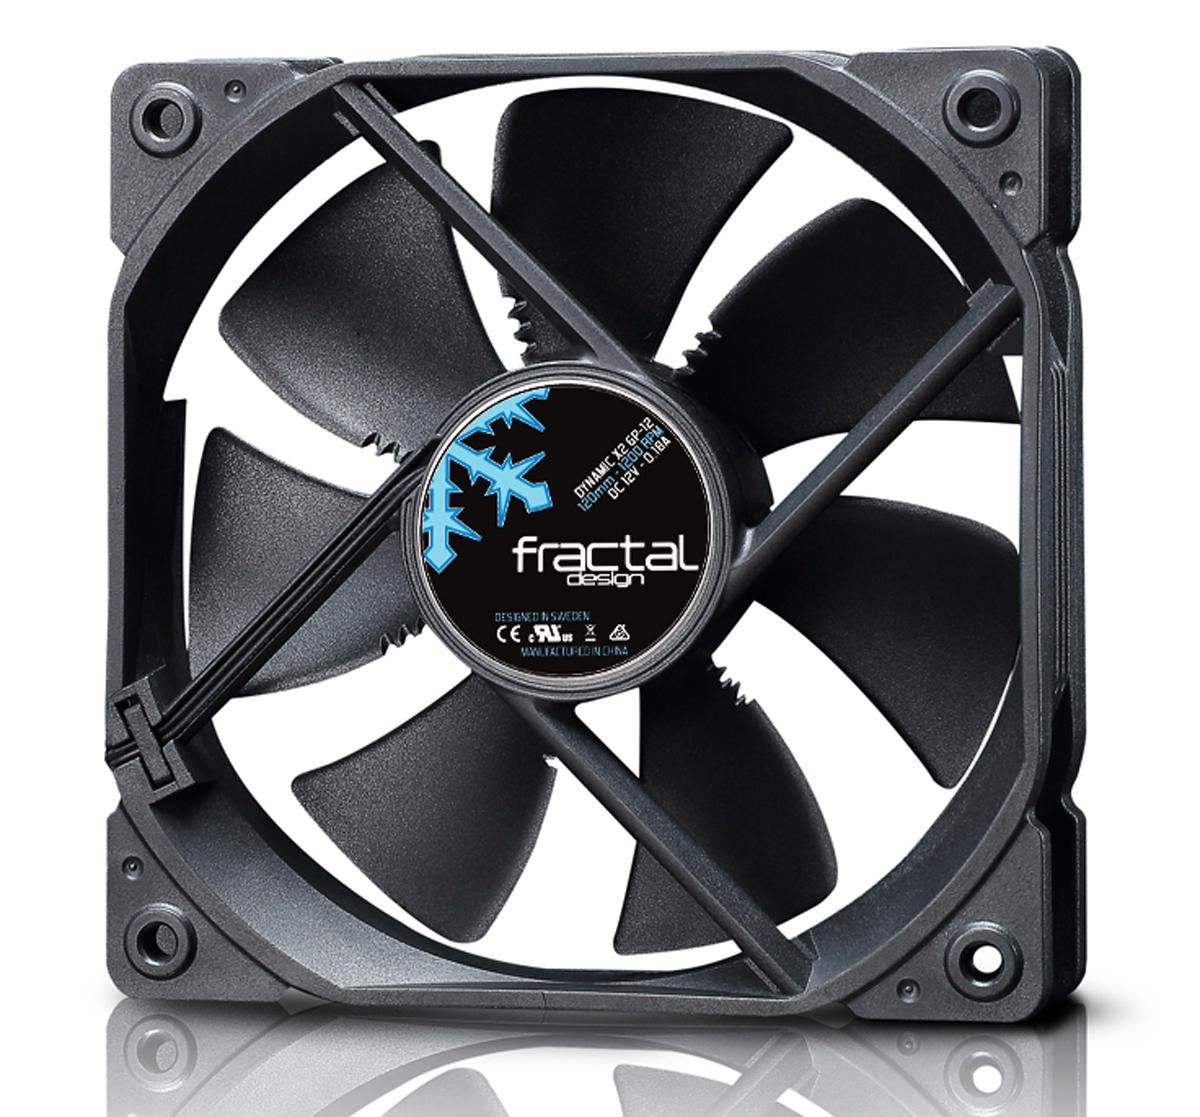 Fractal-Design FD-FAN-DYN-X2-GP12-BK W128268216 Dynamic X2 Computer Case Fan 